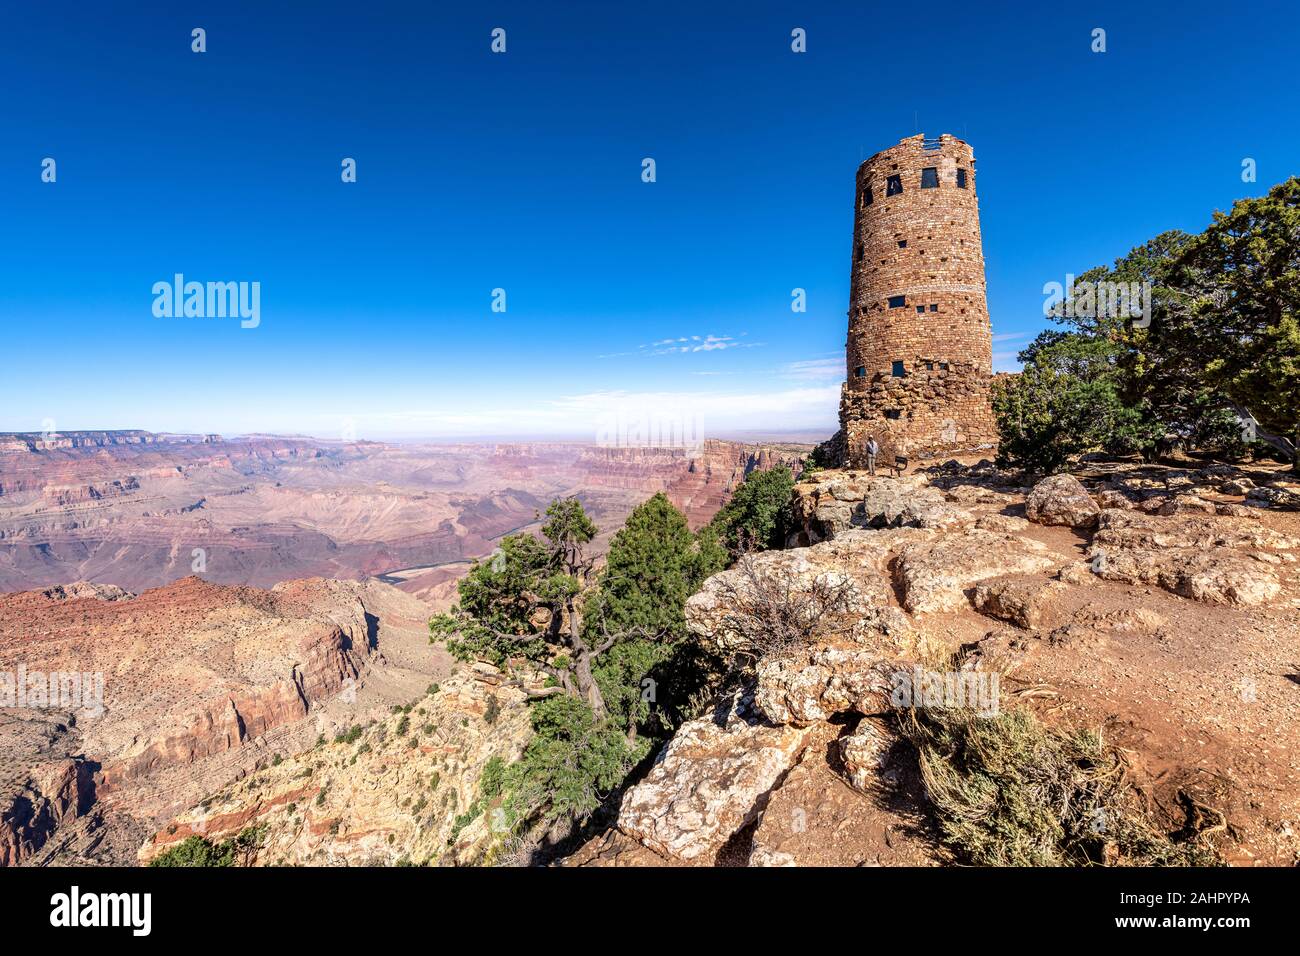 Una vista panoramica delle zone montane del Grand Canyon deserto vista torre di avvistamento incorniciato contro un cielo blu. Foto Stock